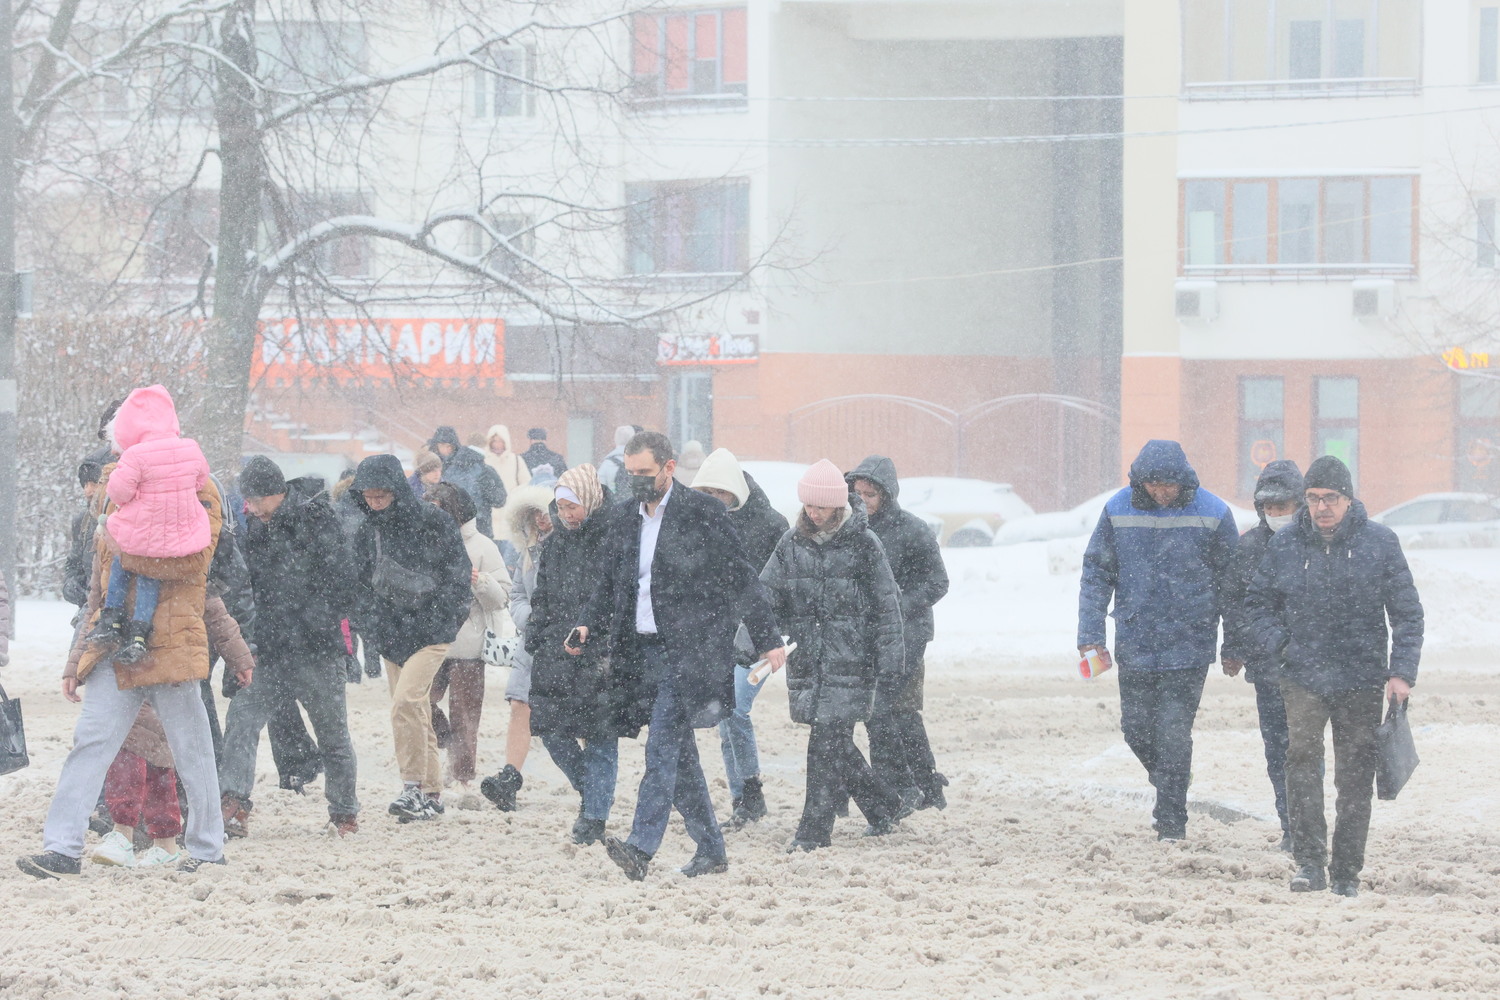  Из-за снегопада Москву парализовало восьмибалльными пробками: кадры заваленной столицы